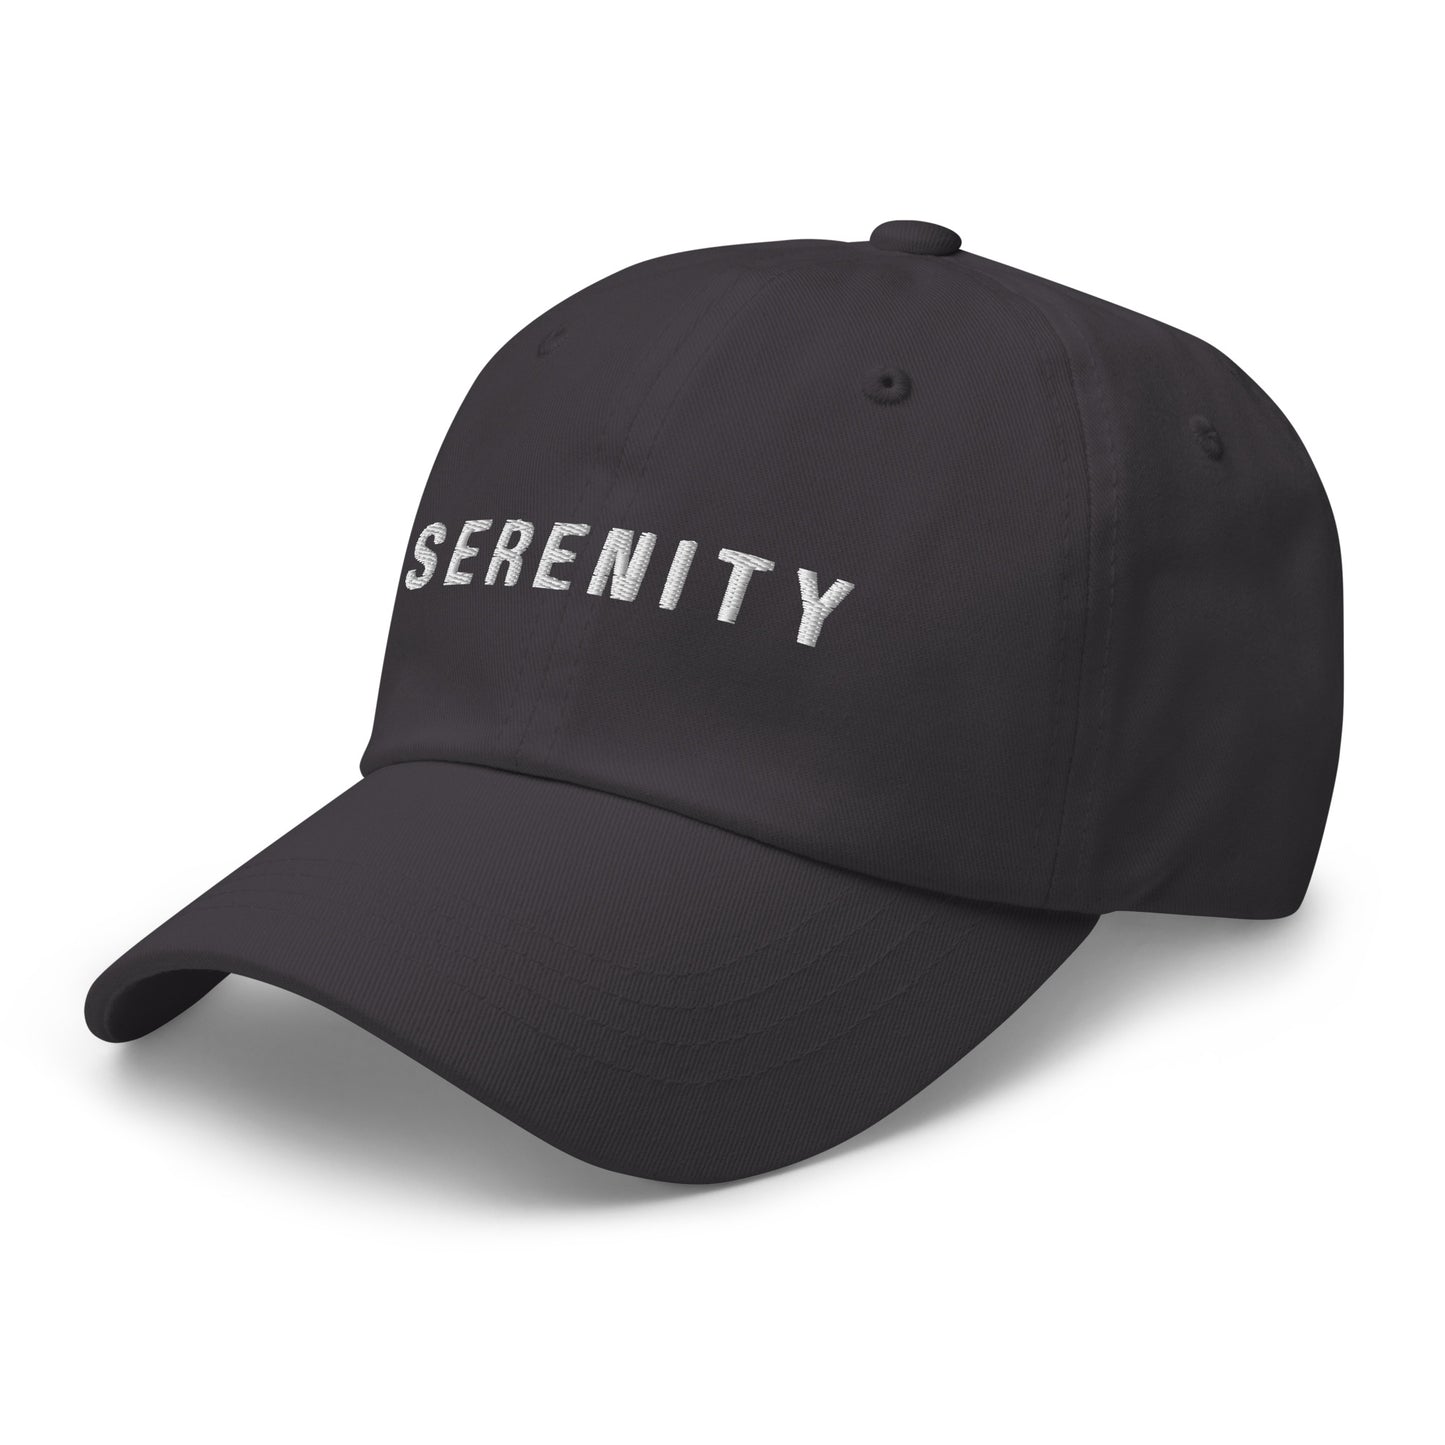 Serenity Dad hat